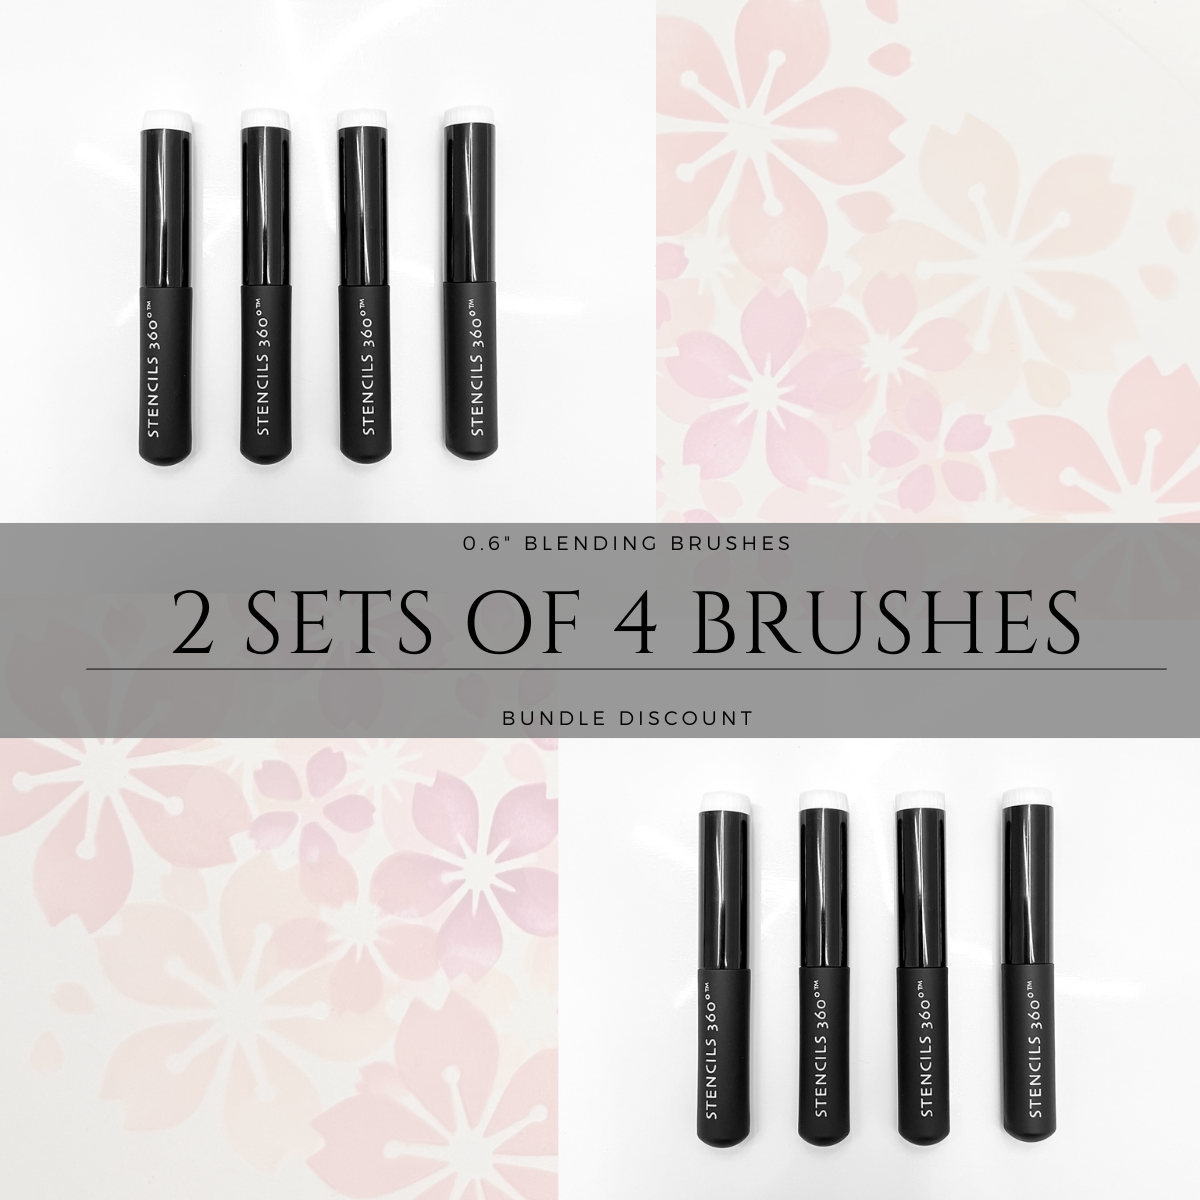 0.6" Blending Brush Bundle (2 Sets of 4 Brushes)